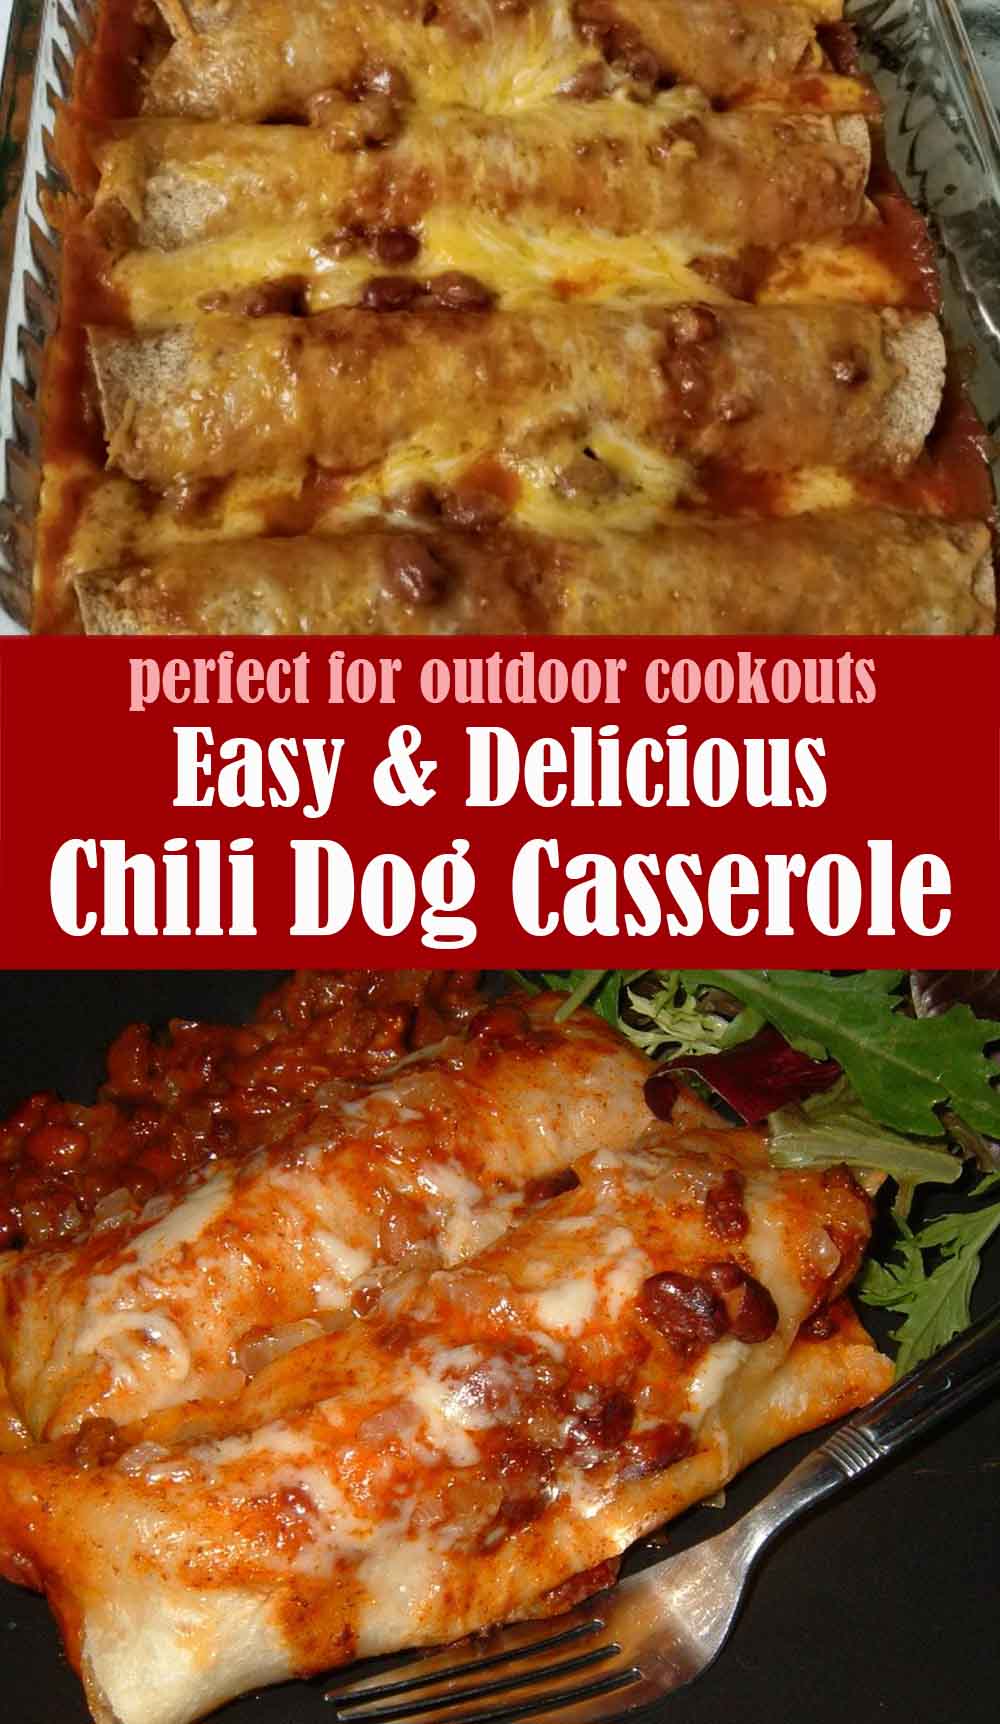 Delicious Chili Dog Casserole